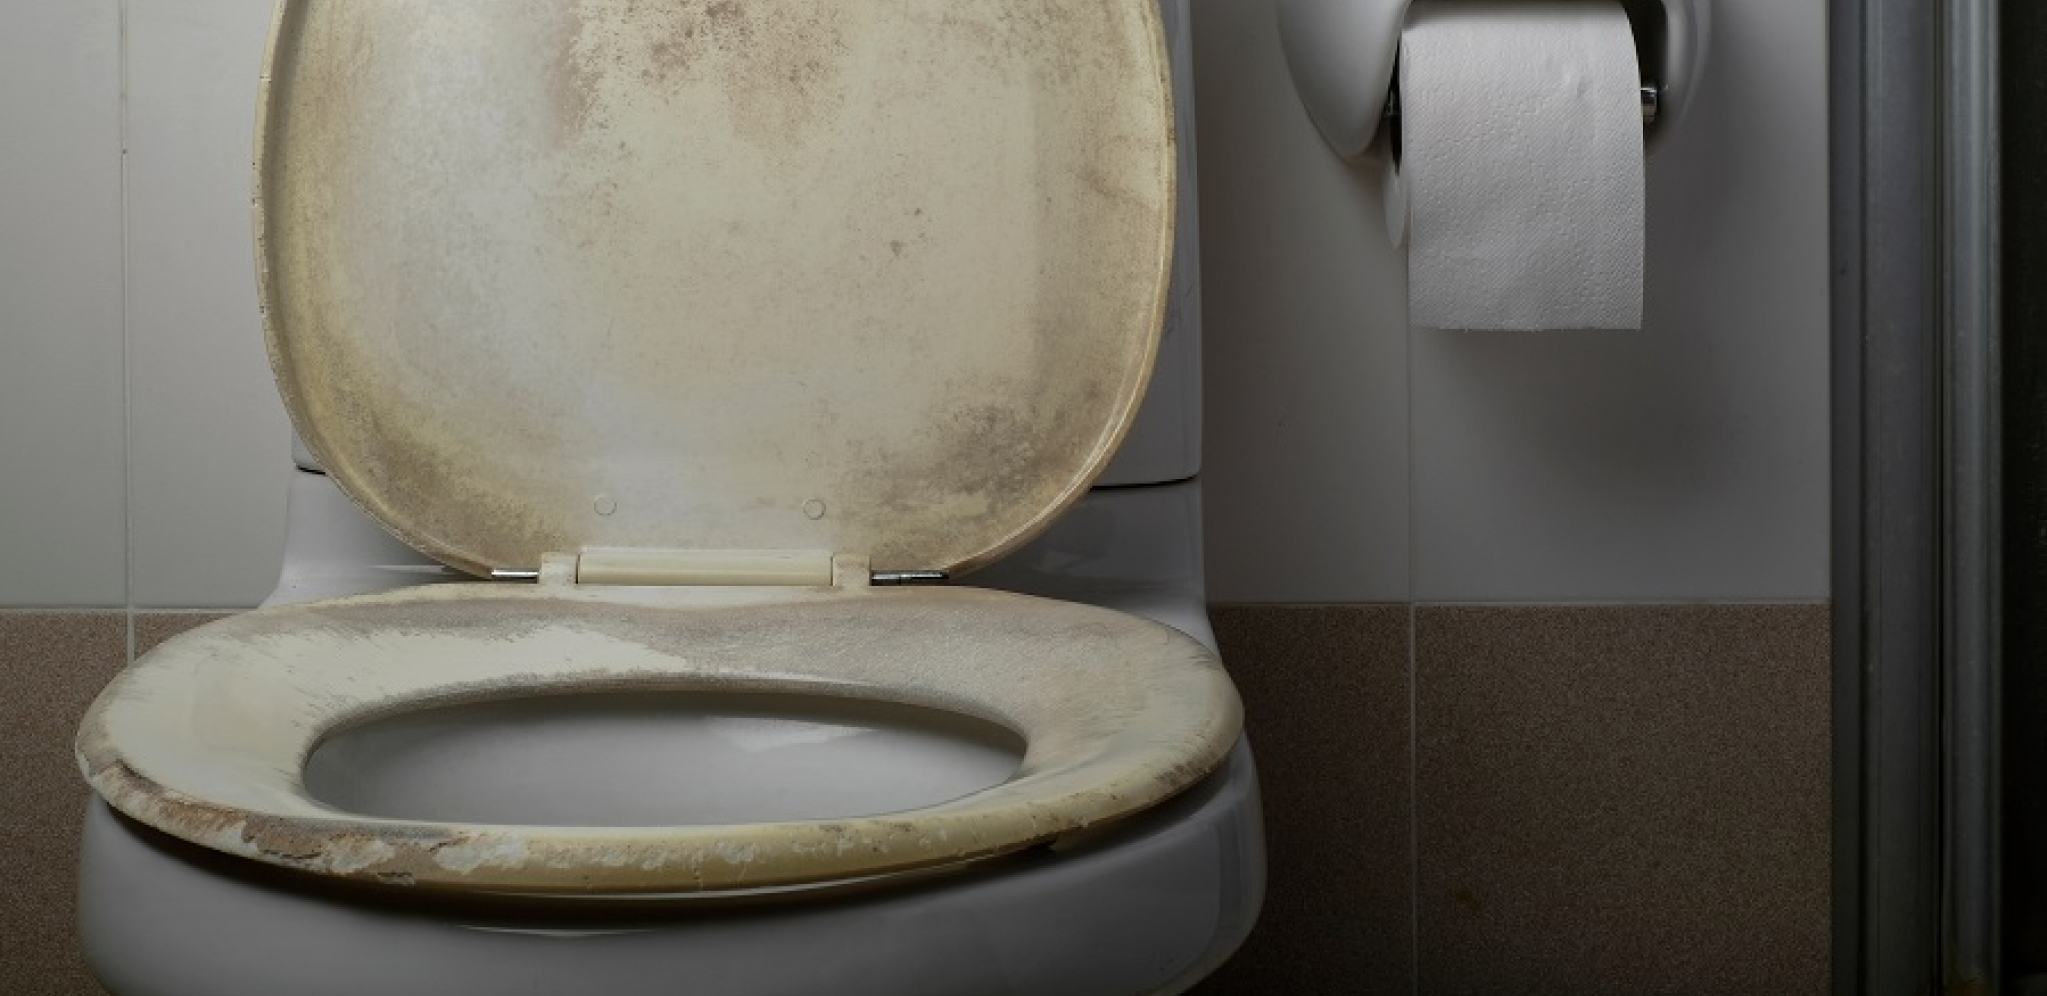 ERUPCIJA VULKANA, FUJ! Nakon ovoga više vam nikada neće pasti na pamet da ovako puštate vodu u WC šolji (VIDEO)